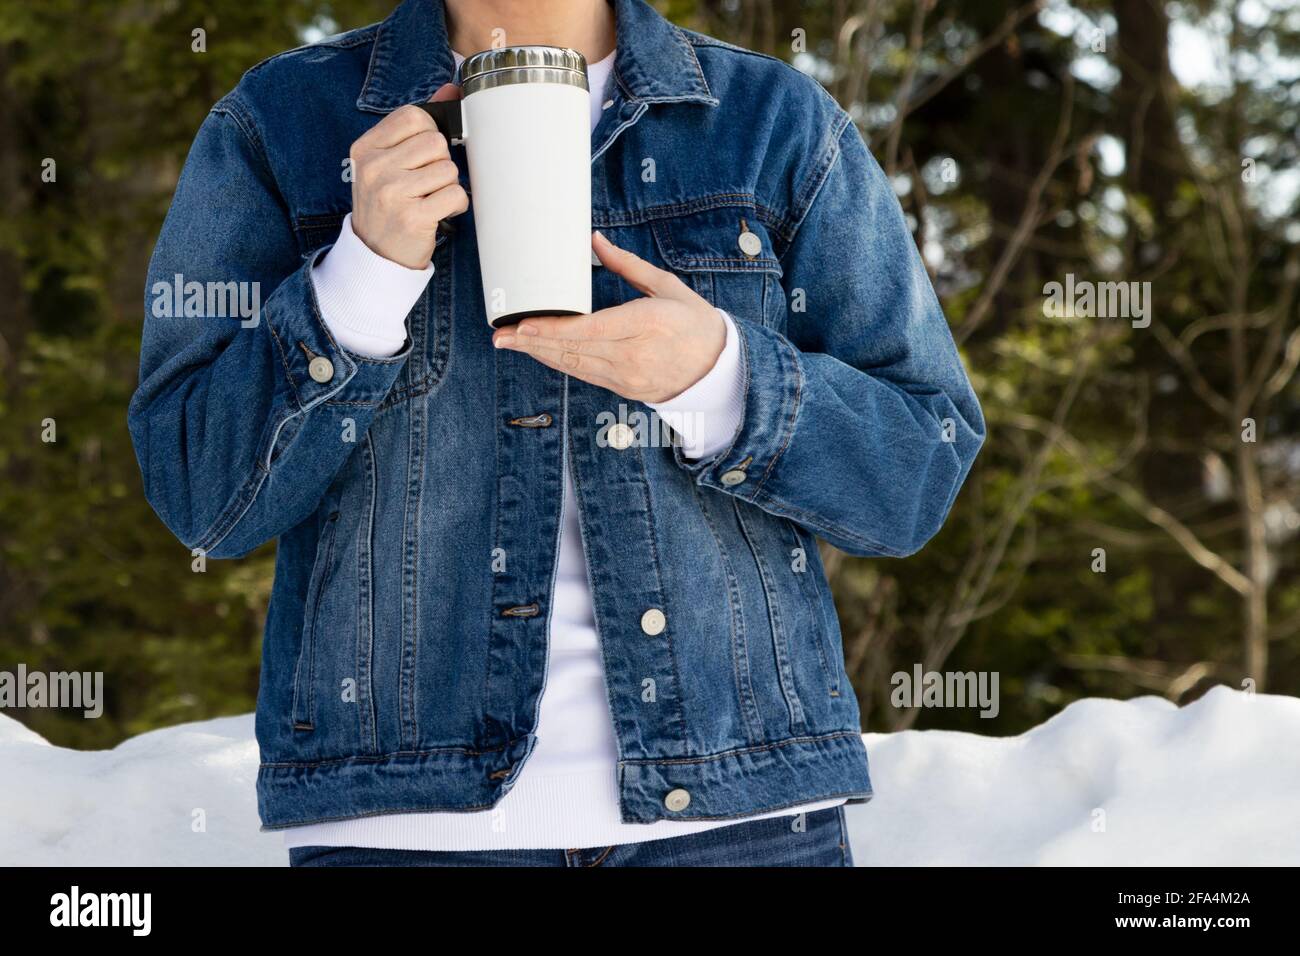 Nachbau einer Frau, die eine Jeansjacke mit einem weißen Reisetasse in einem verschneiten Wald trägt. Leere Reise-Kaffeebecher mit Griffschablone, Modell mockup Stockfoto